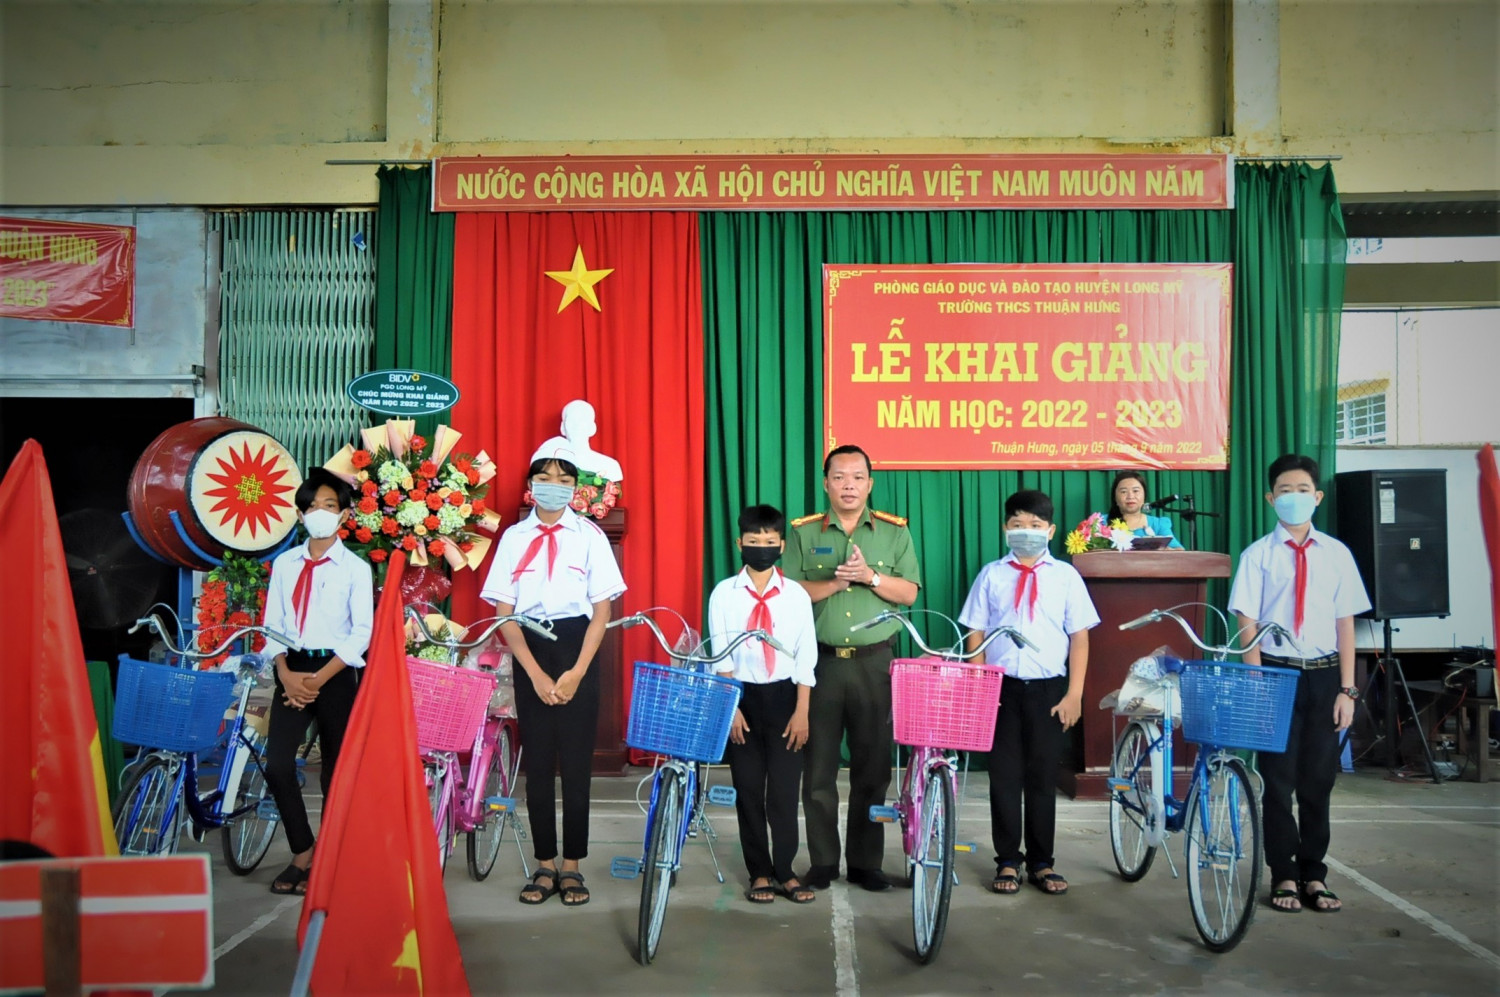 Đại tá Nguyễn Văn Thắng, Ủy viên Ban Thường vụ Đảng ủy, Phó Giám đốc Công an tỉnh trao xe đạp cho các em học sinh Trường Trung học cơ sở Thuận Hưng, huyện Long Mỹ